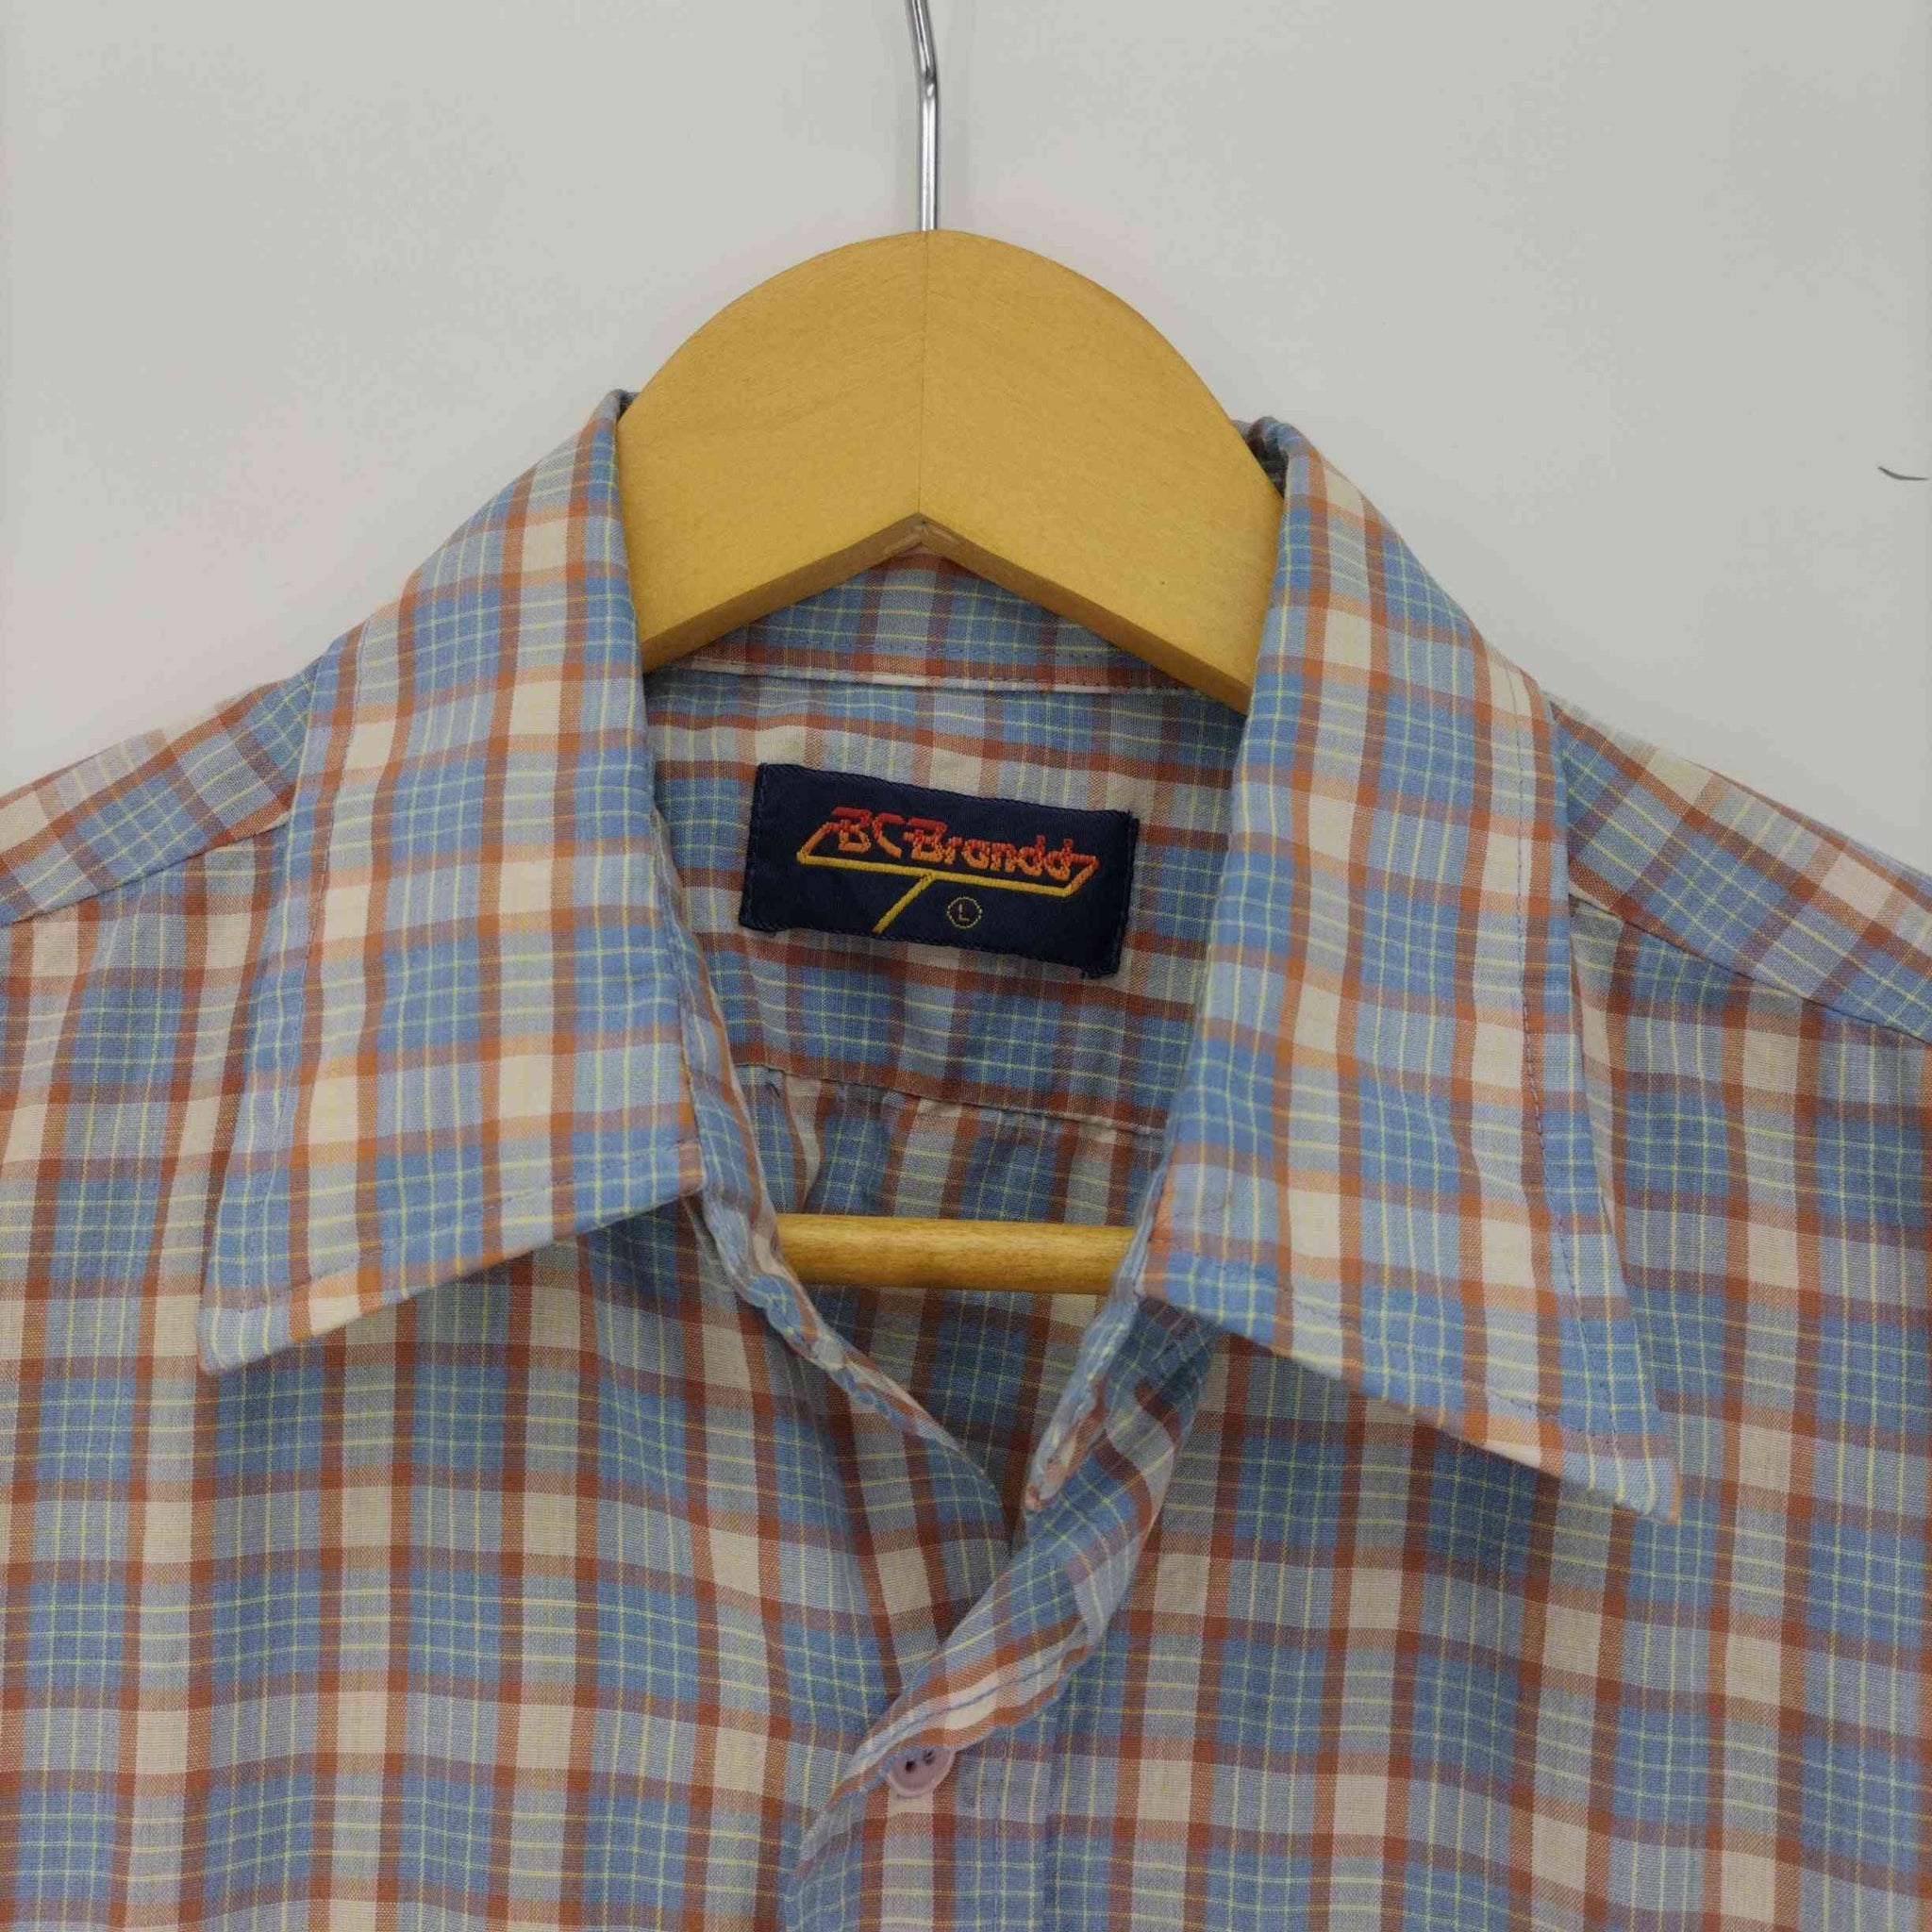 Sears(シアーズ)70-80S BC BRANDD ダブルポケット S/S レギュラーカラー シャツ